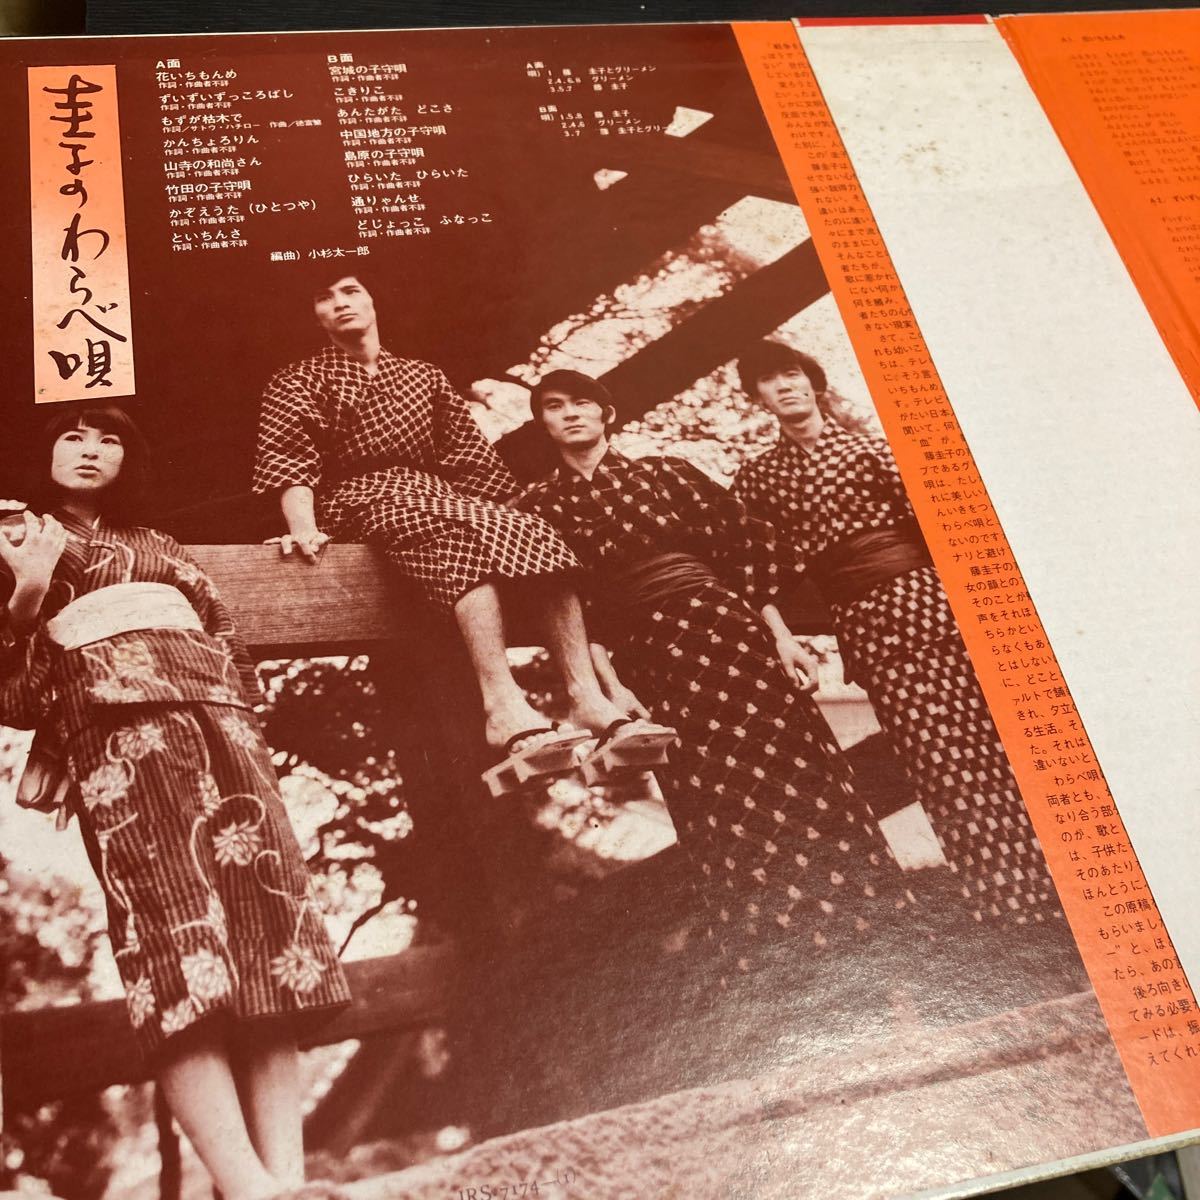 藤圭子と グリーメン 【圭子のわらべ唄】LP 帯付 RCA JRS-7174 Pop 1971 レア盤_画像4